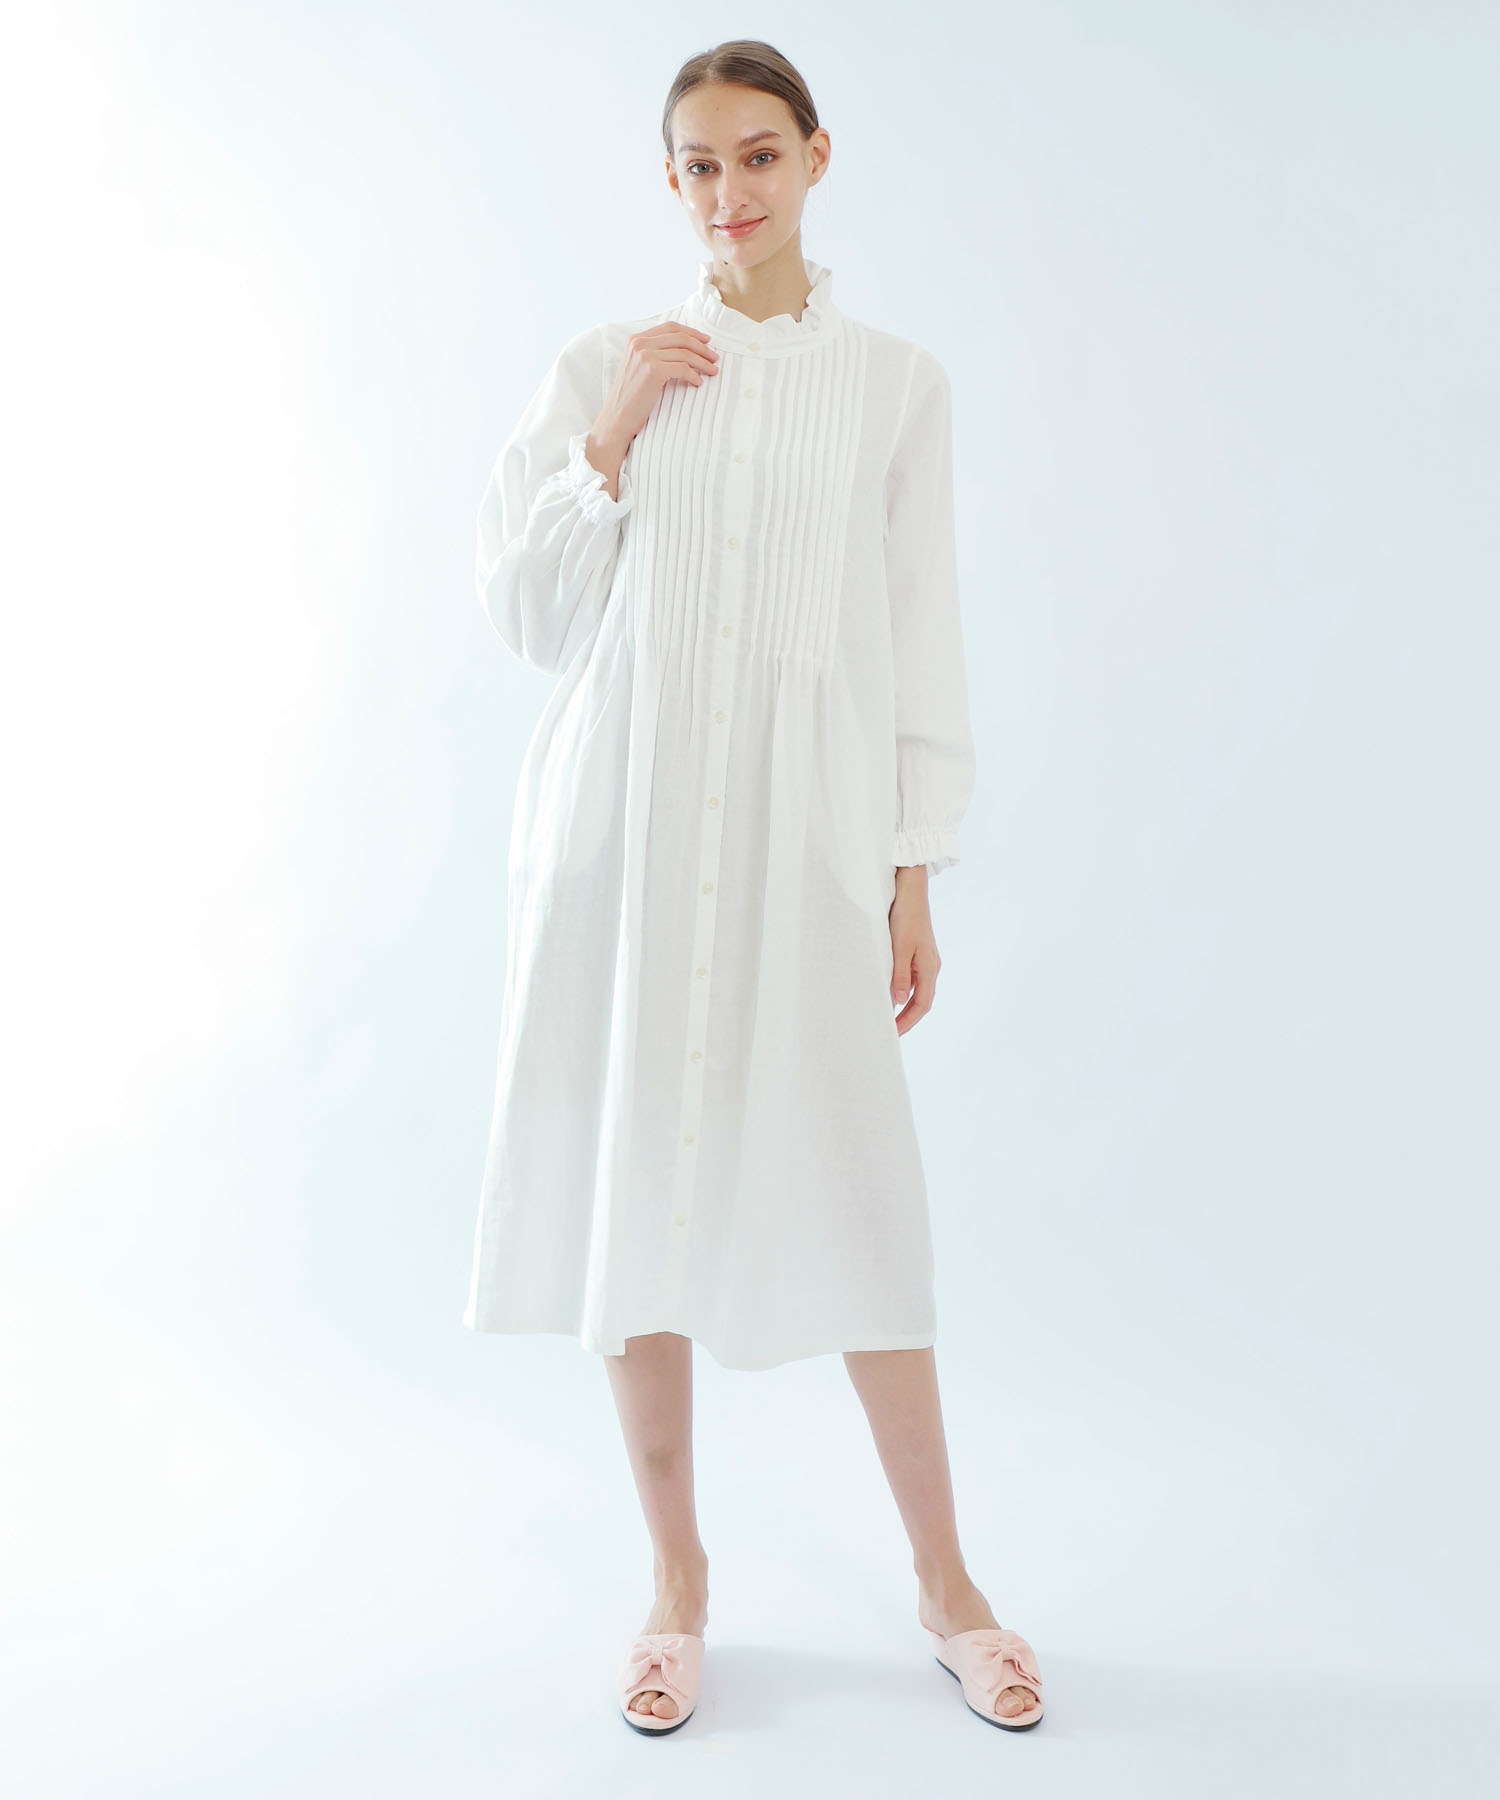 パジャマが汗でベットリ 寝汗がひどい理由とは 寝汗対策をご紹介 ナルエー公式通販サイト